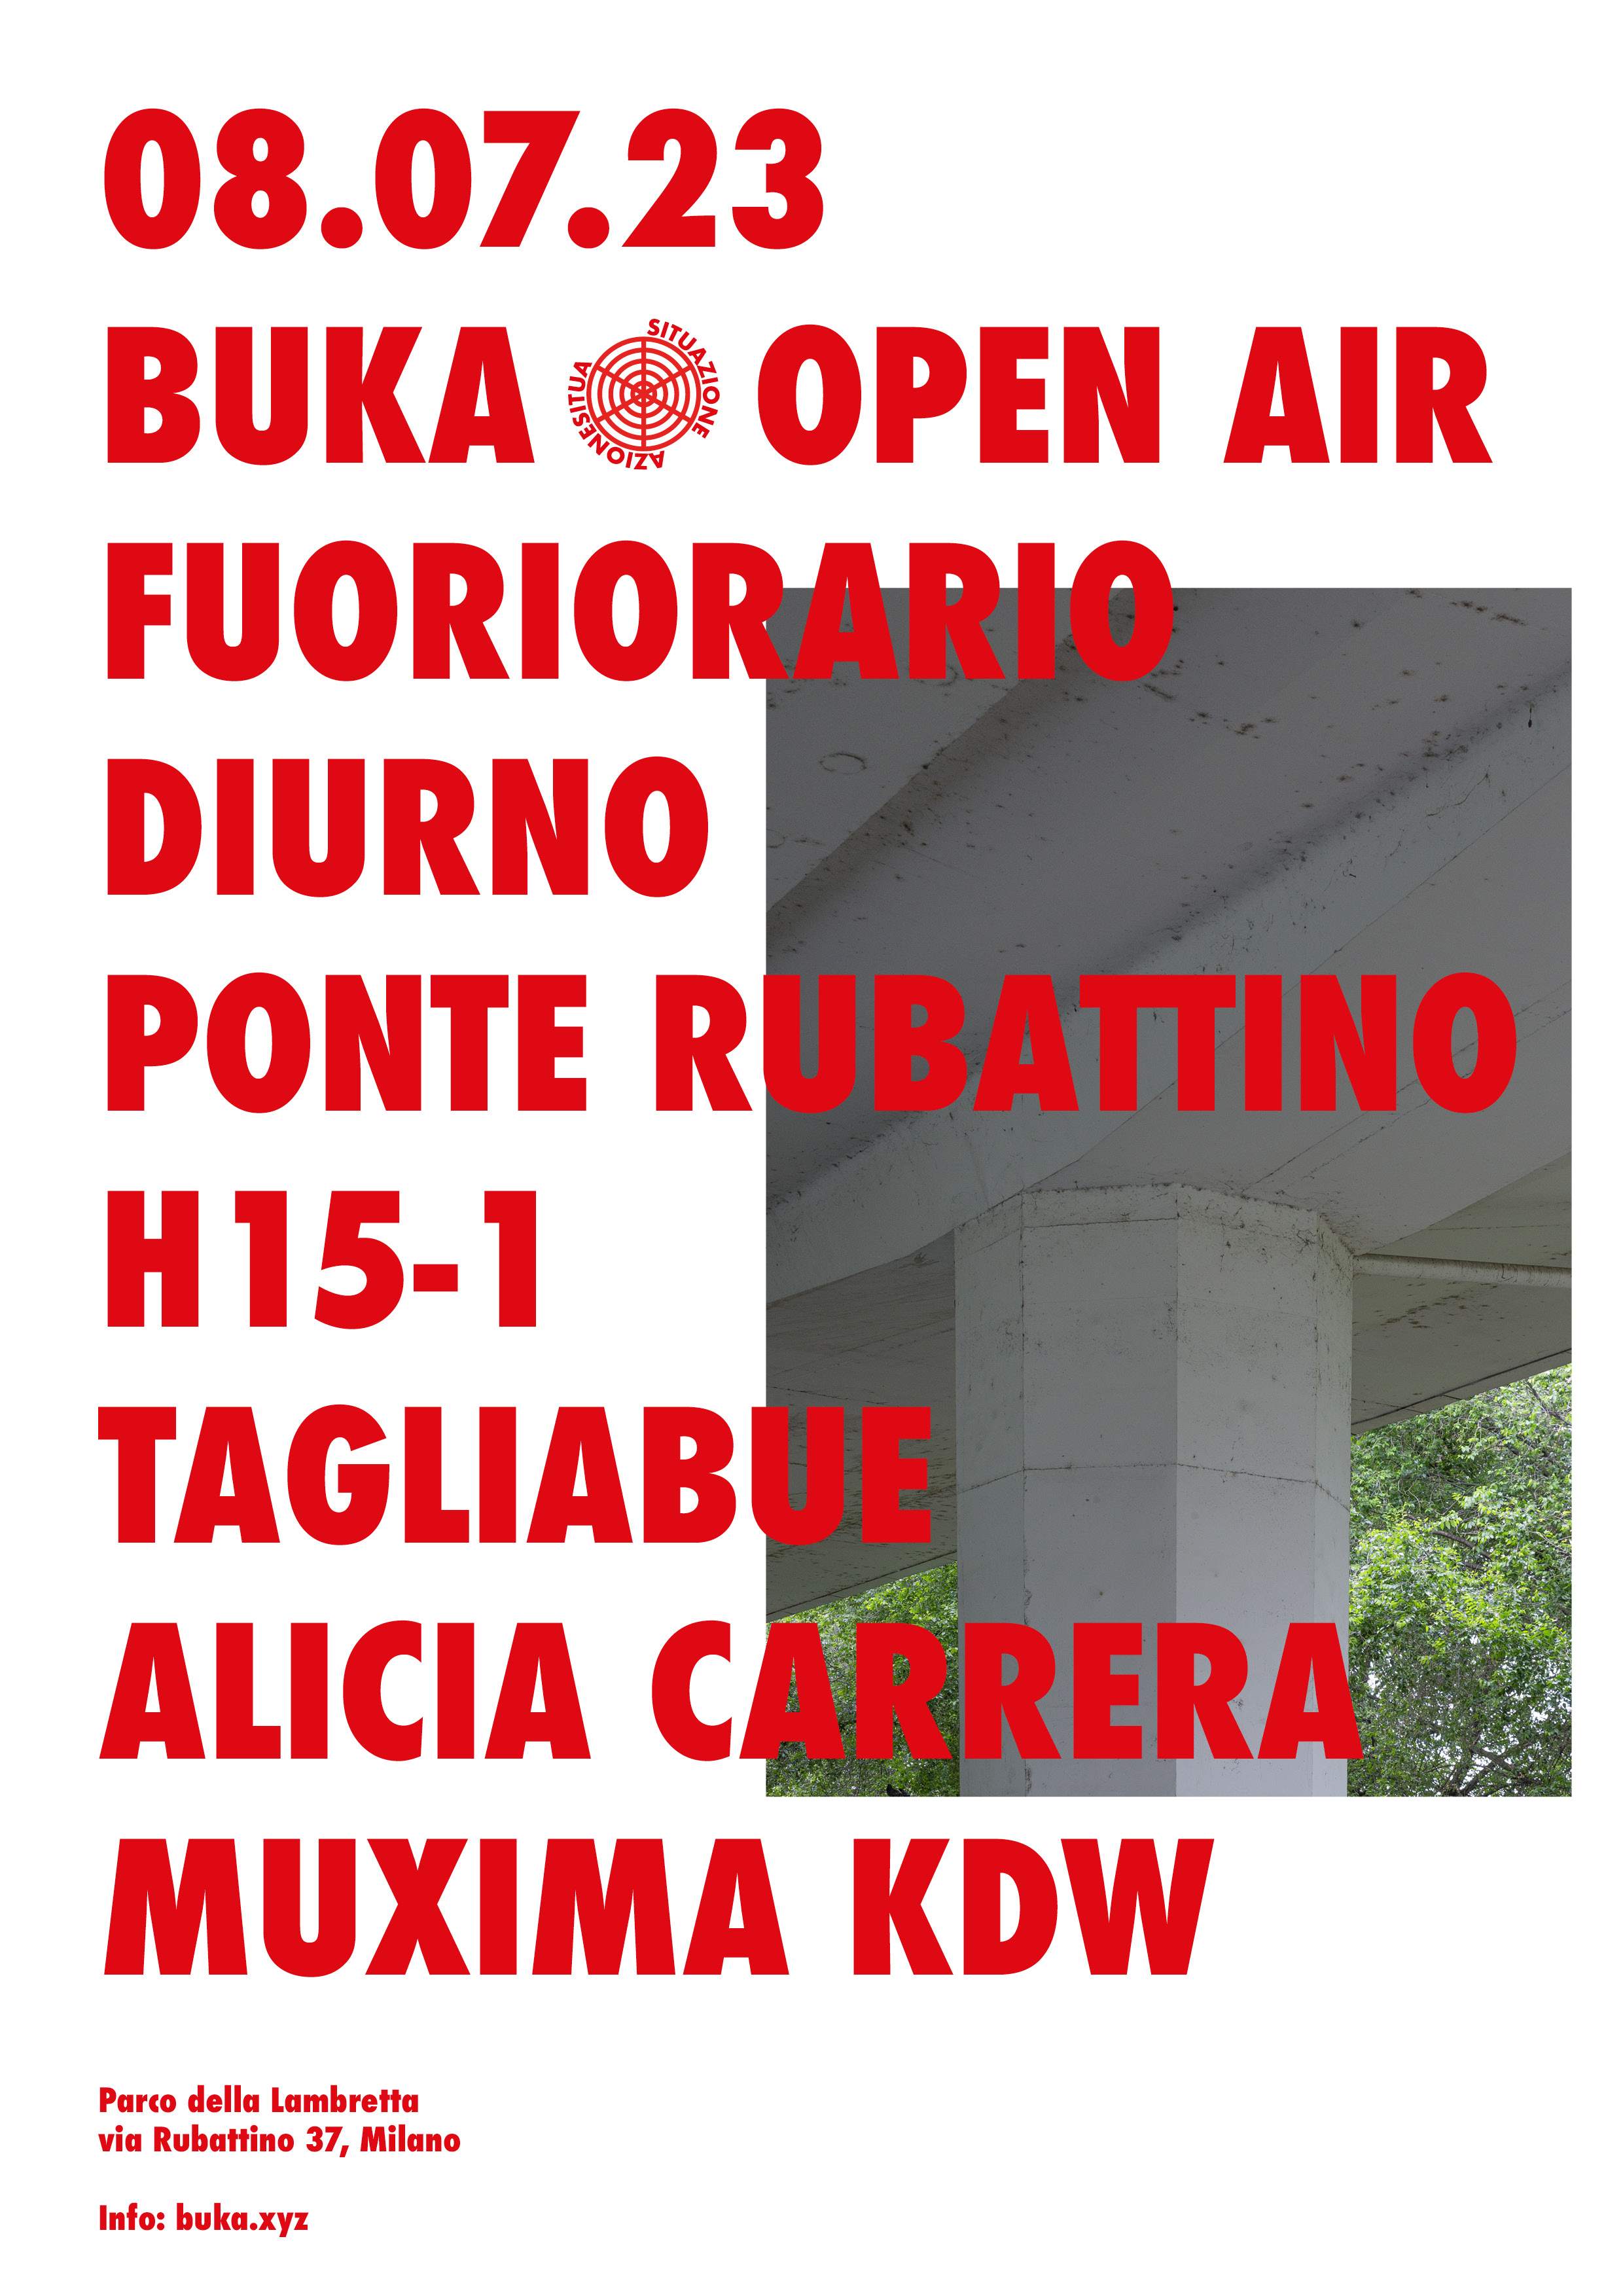 BUKA - Fuoriorario Diurno: TAGLIABUE, Alicia Carrera, Muxima KDW - フライヤー表